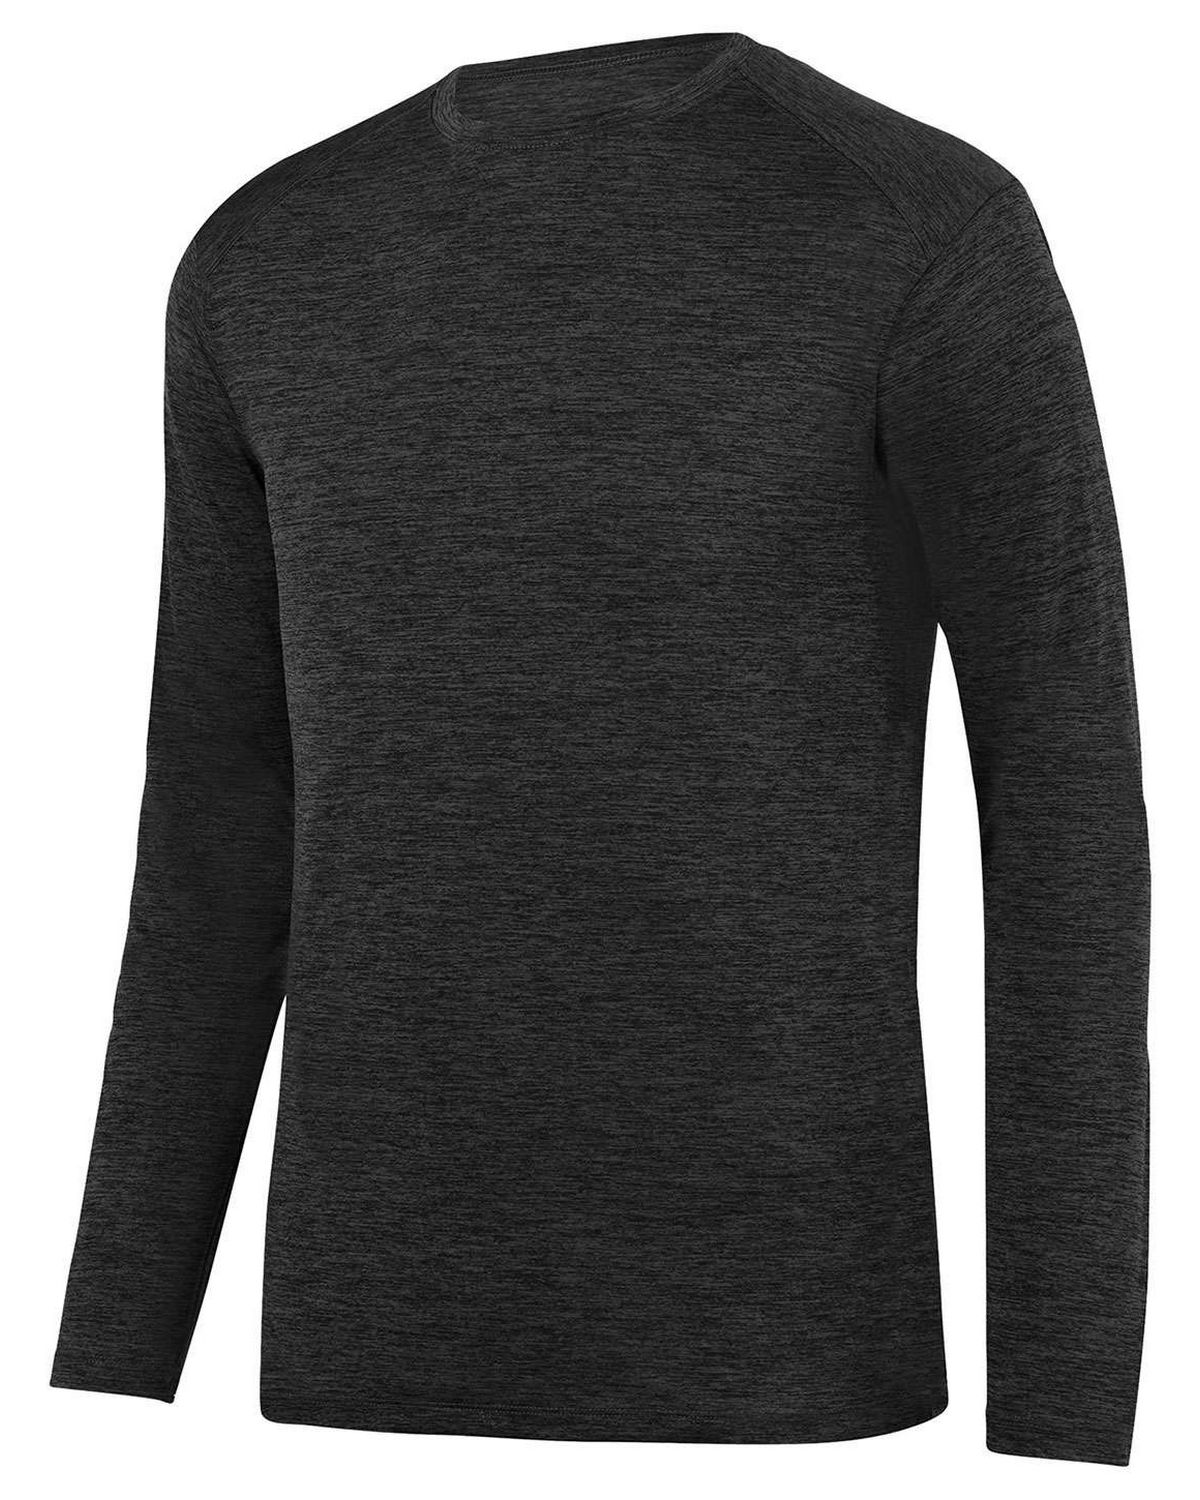 Augusta Sportswear 2953 Unisex Intensify Long Sleeve T-Shirt